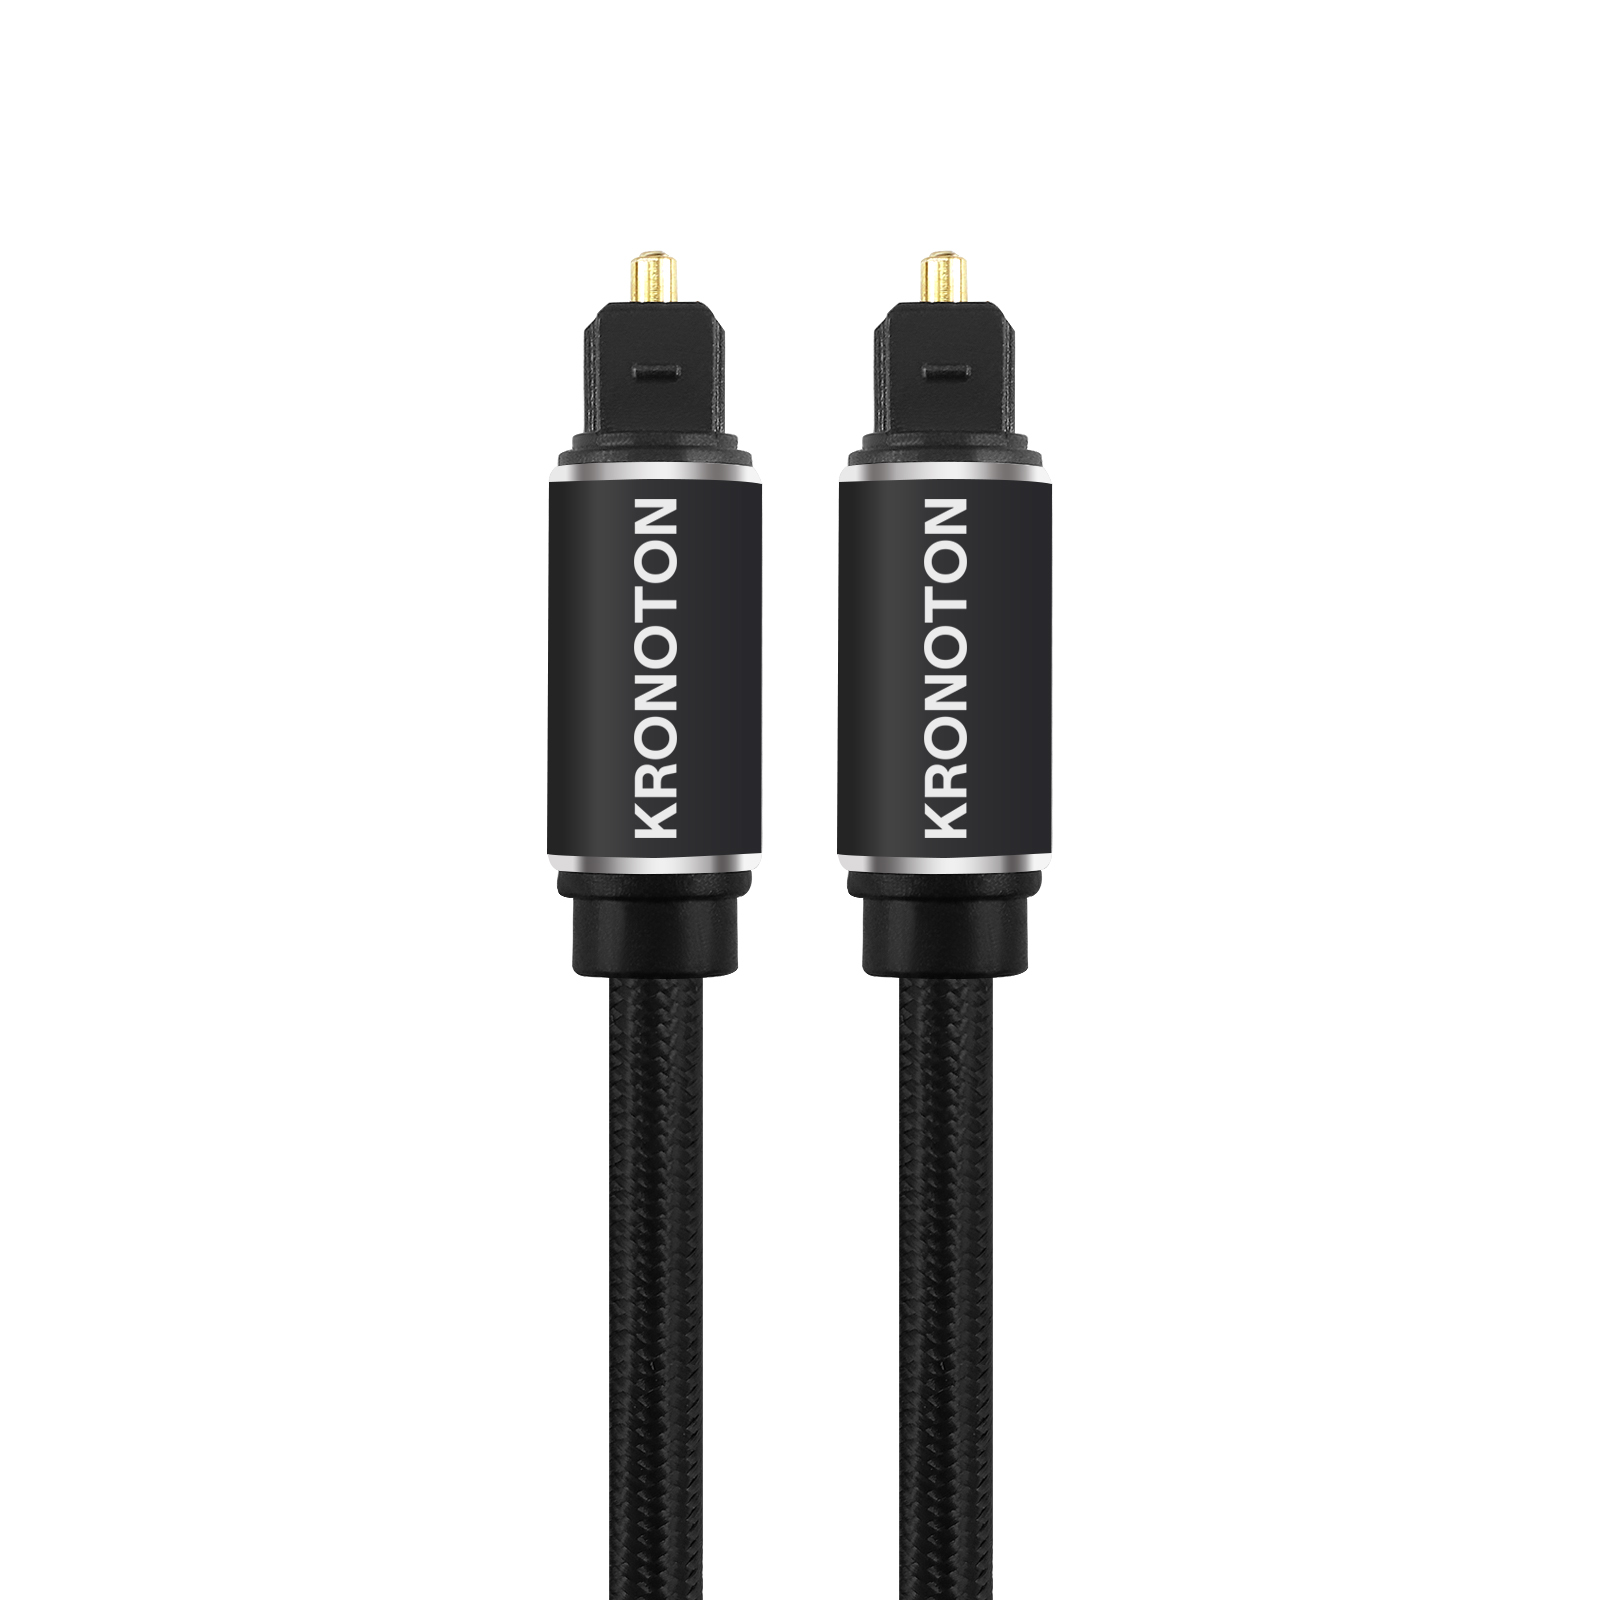 HDSX KRONOTON Premium Kabel Toslink Audio Optical, Kabel, Lichtleiter m Digital 1,5